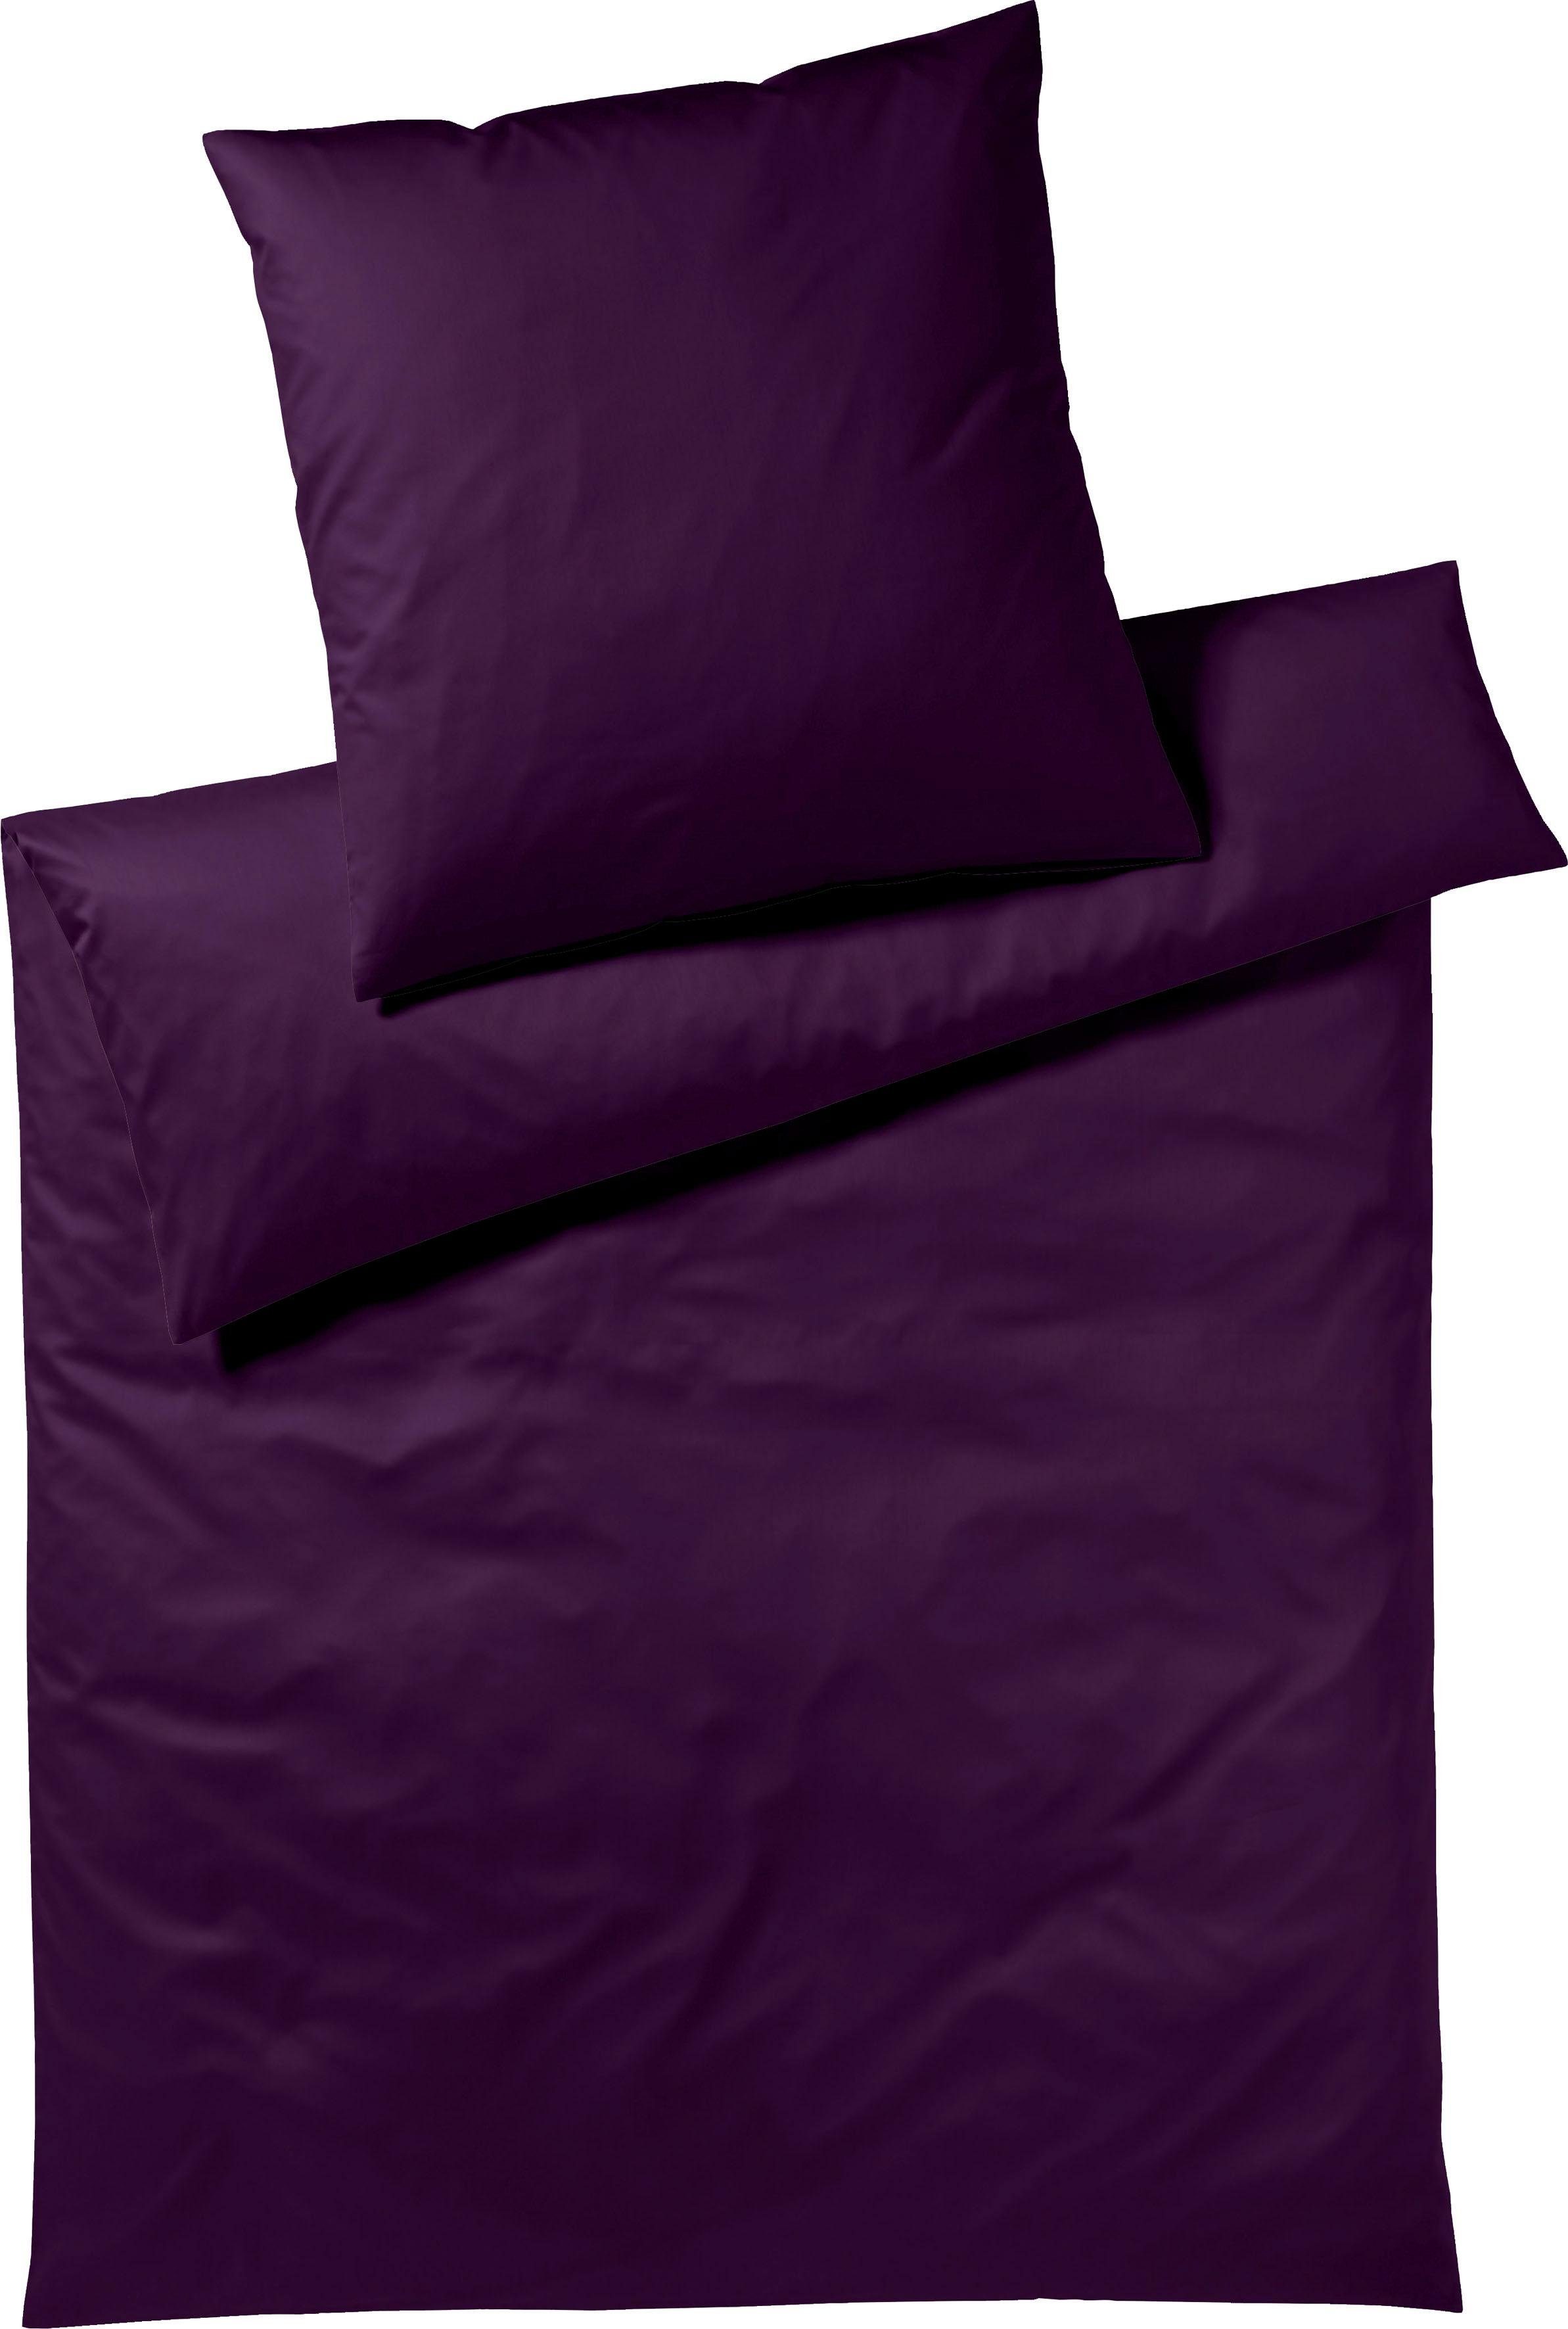 Yes for Bed Overtrekset Pure & Simple Uni gemaakt van hoogwaardig mako satijn